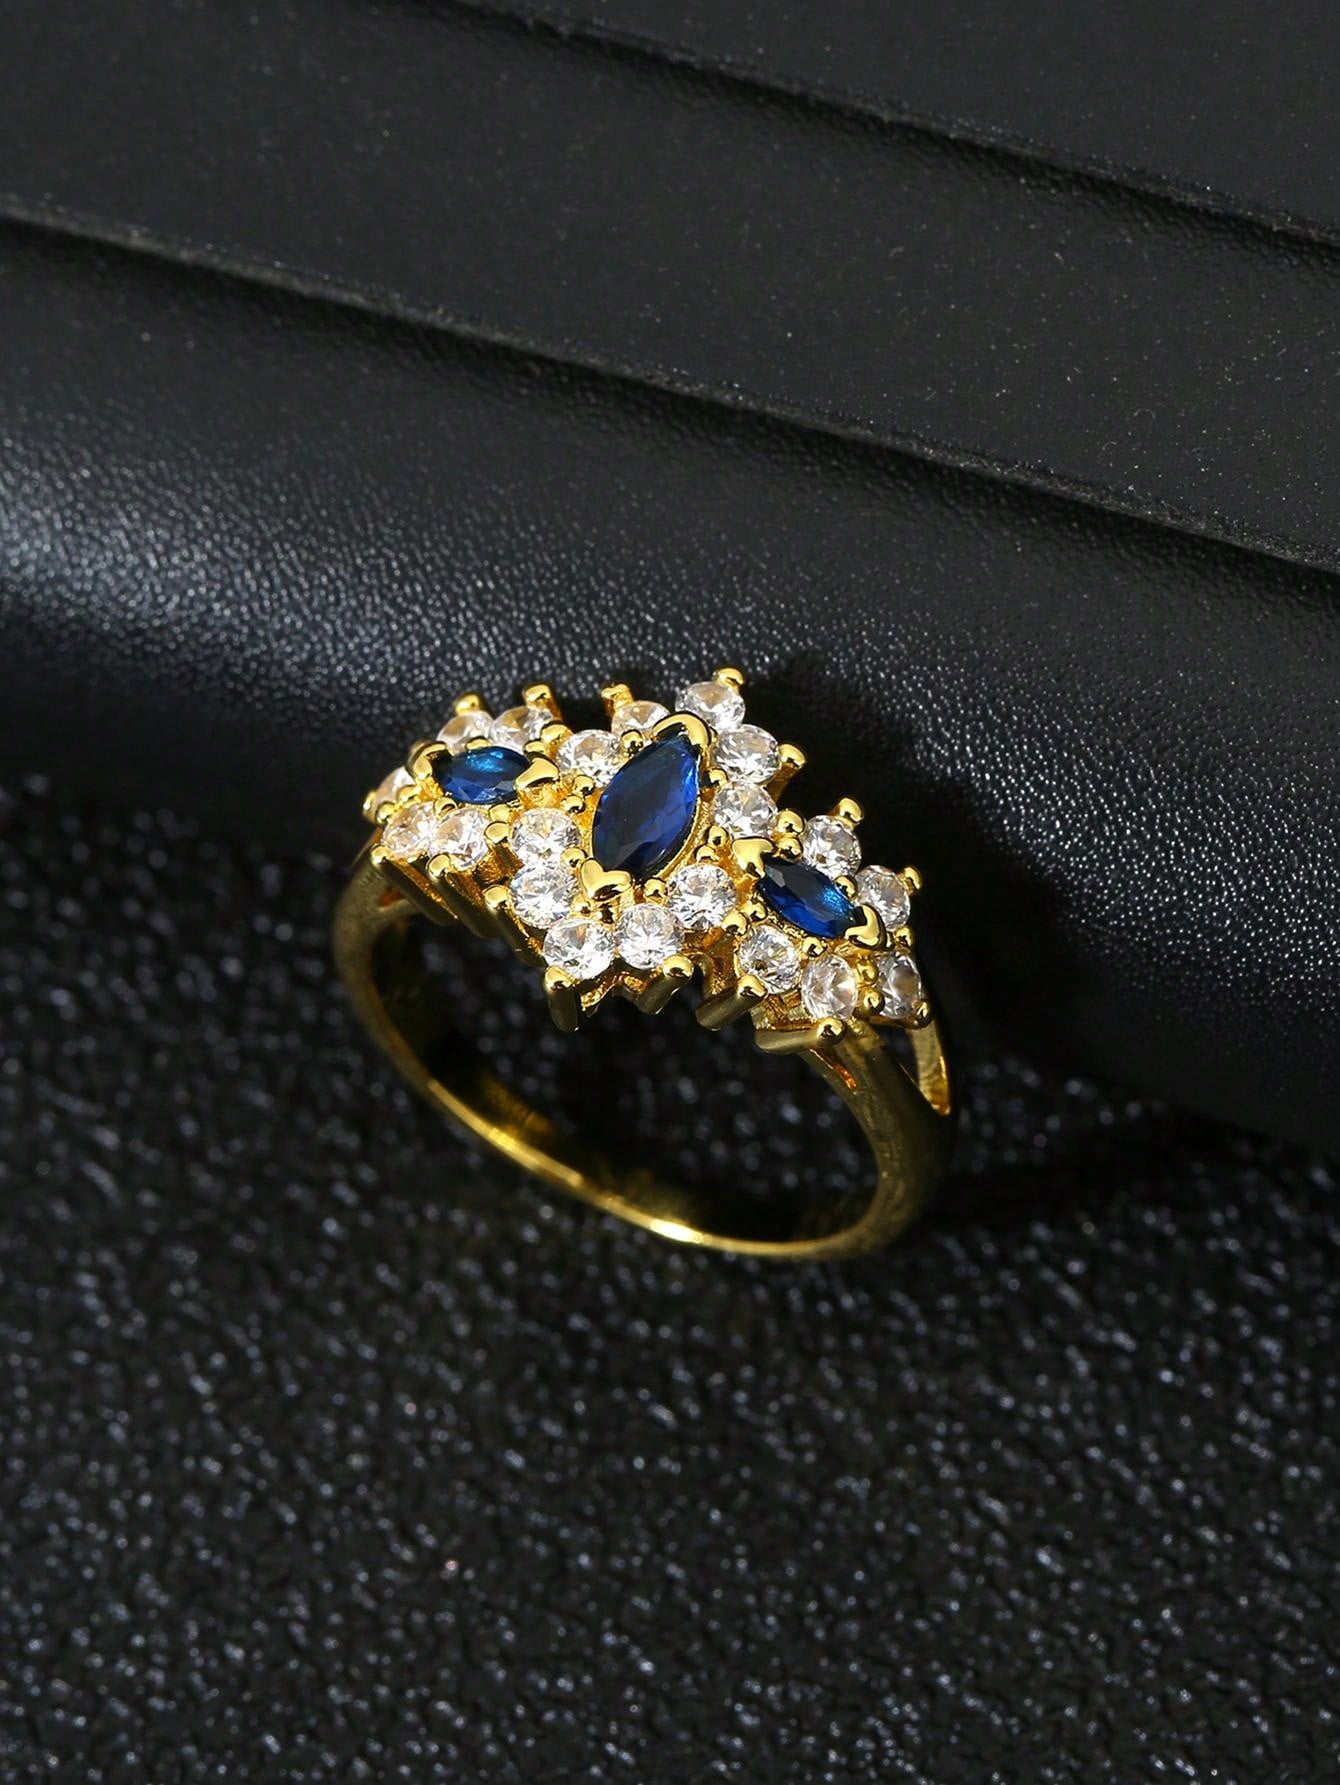 Brilliant Blue Exquisite Ring